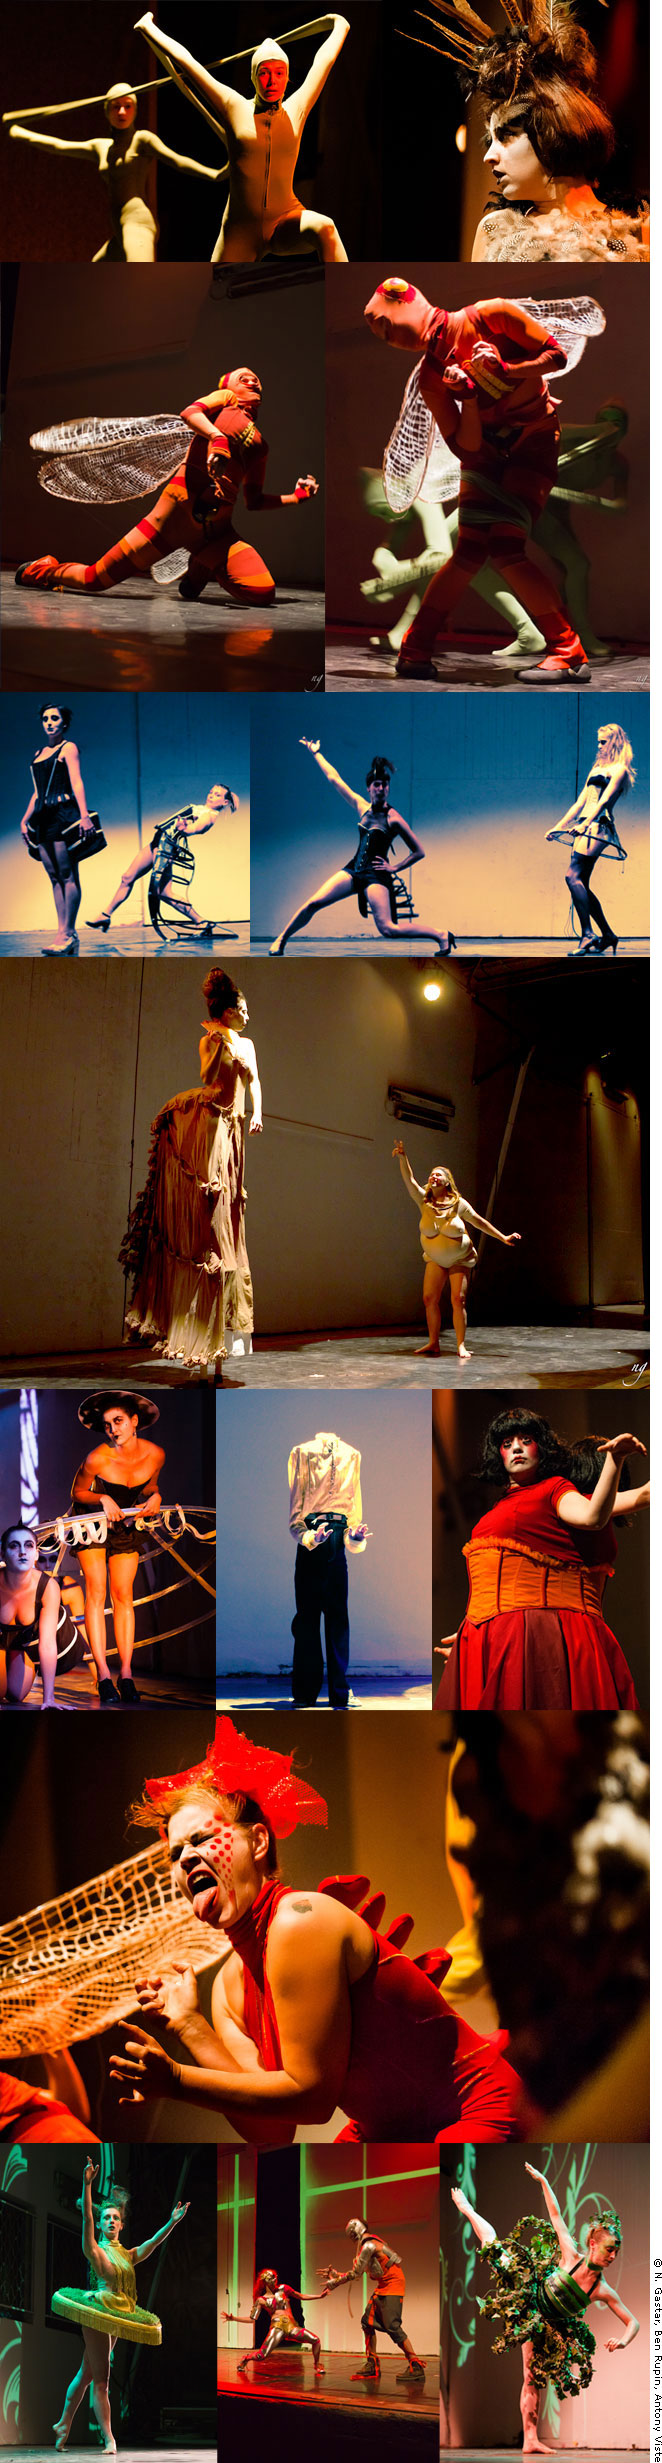 Création et réalisation des costumes pour le spectacle (Dé)formations multiples et coordination artistique du spectacle, 2012